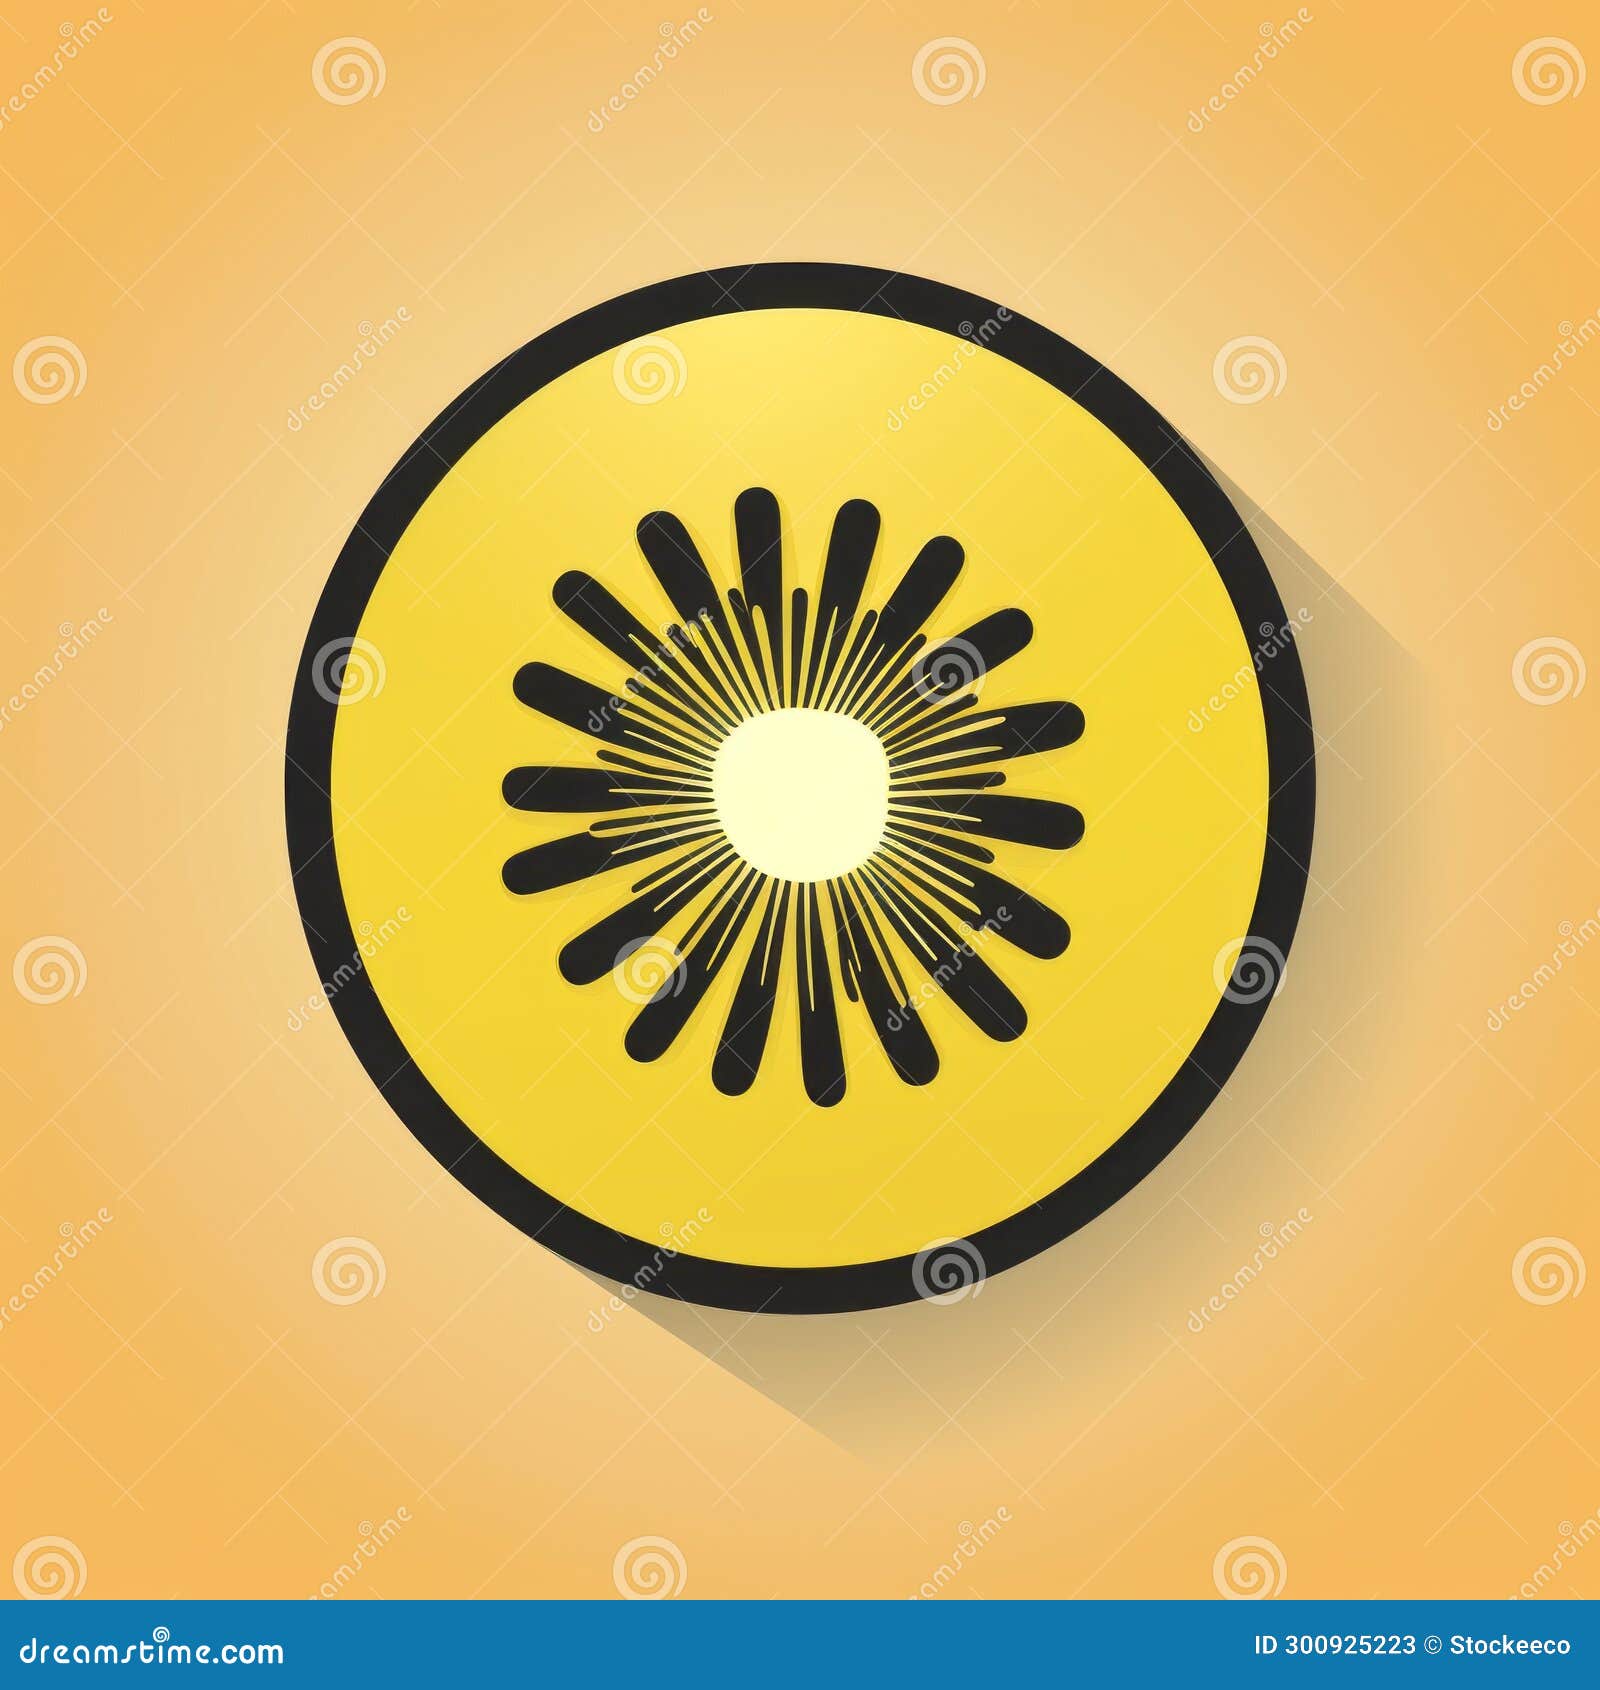 kiwi  on yellow background: superflat, rounded, flickr style